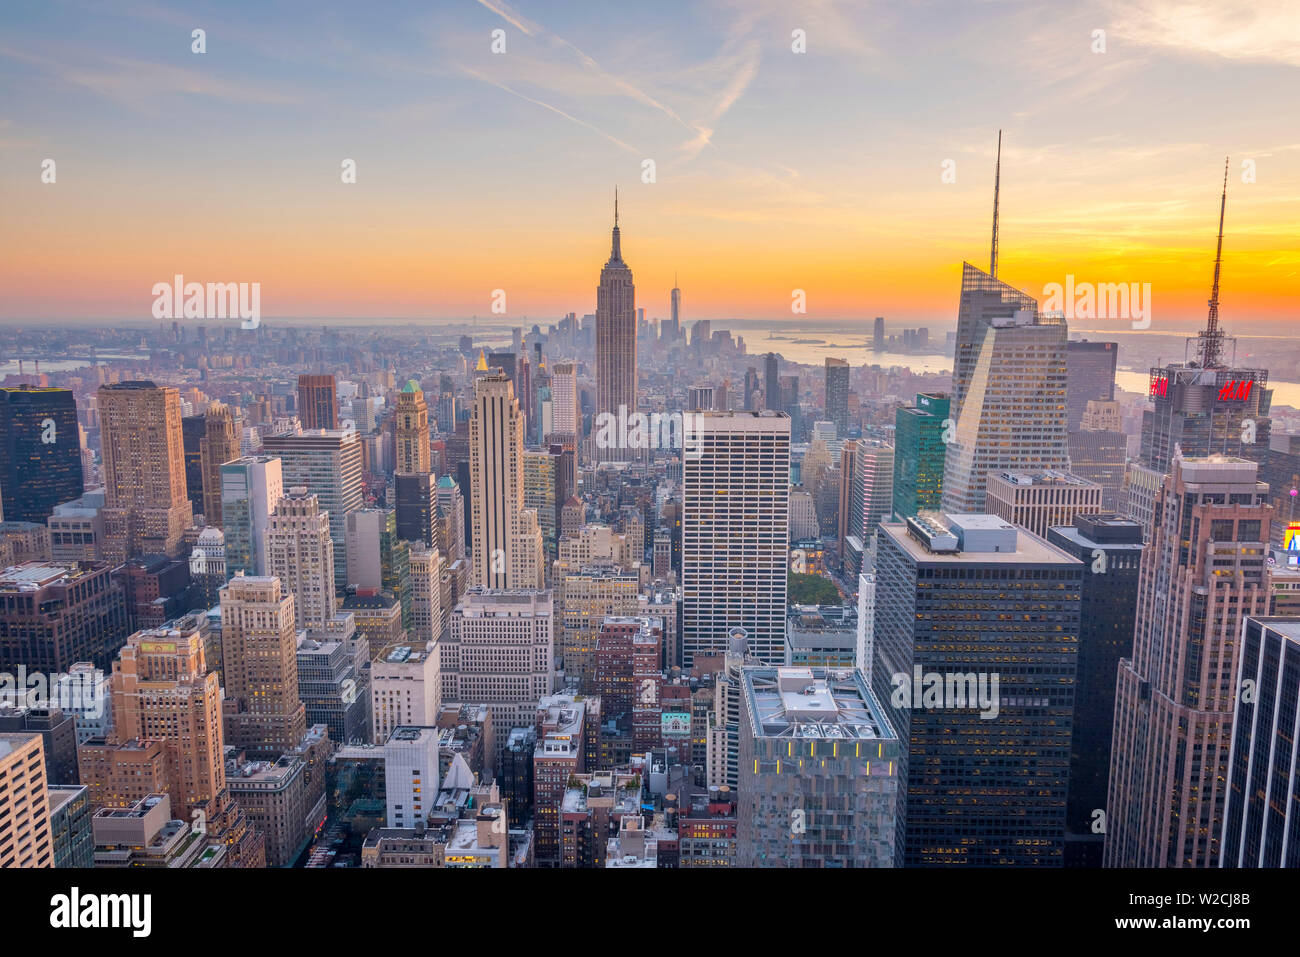 USA, New York, Midtown et Lower Manhattan, Empire State Building et la Tour de la Liberté Banque D'Images